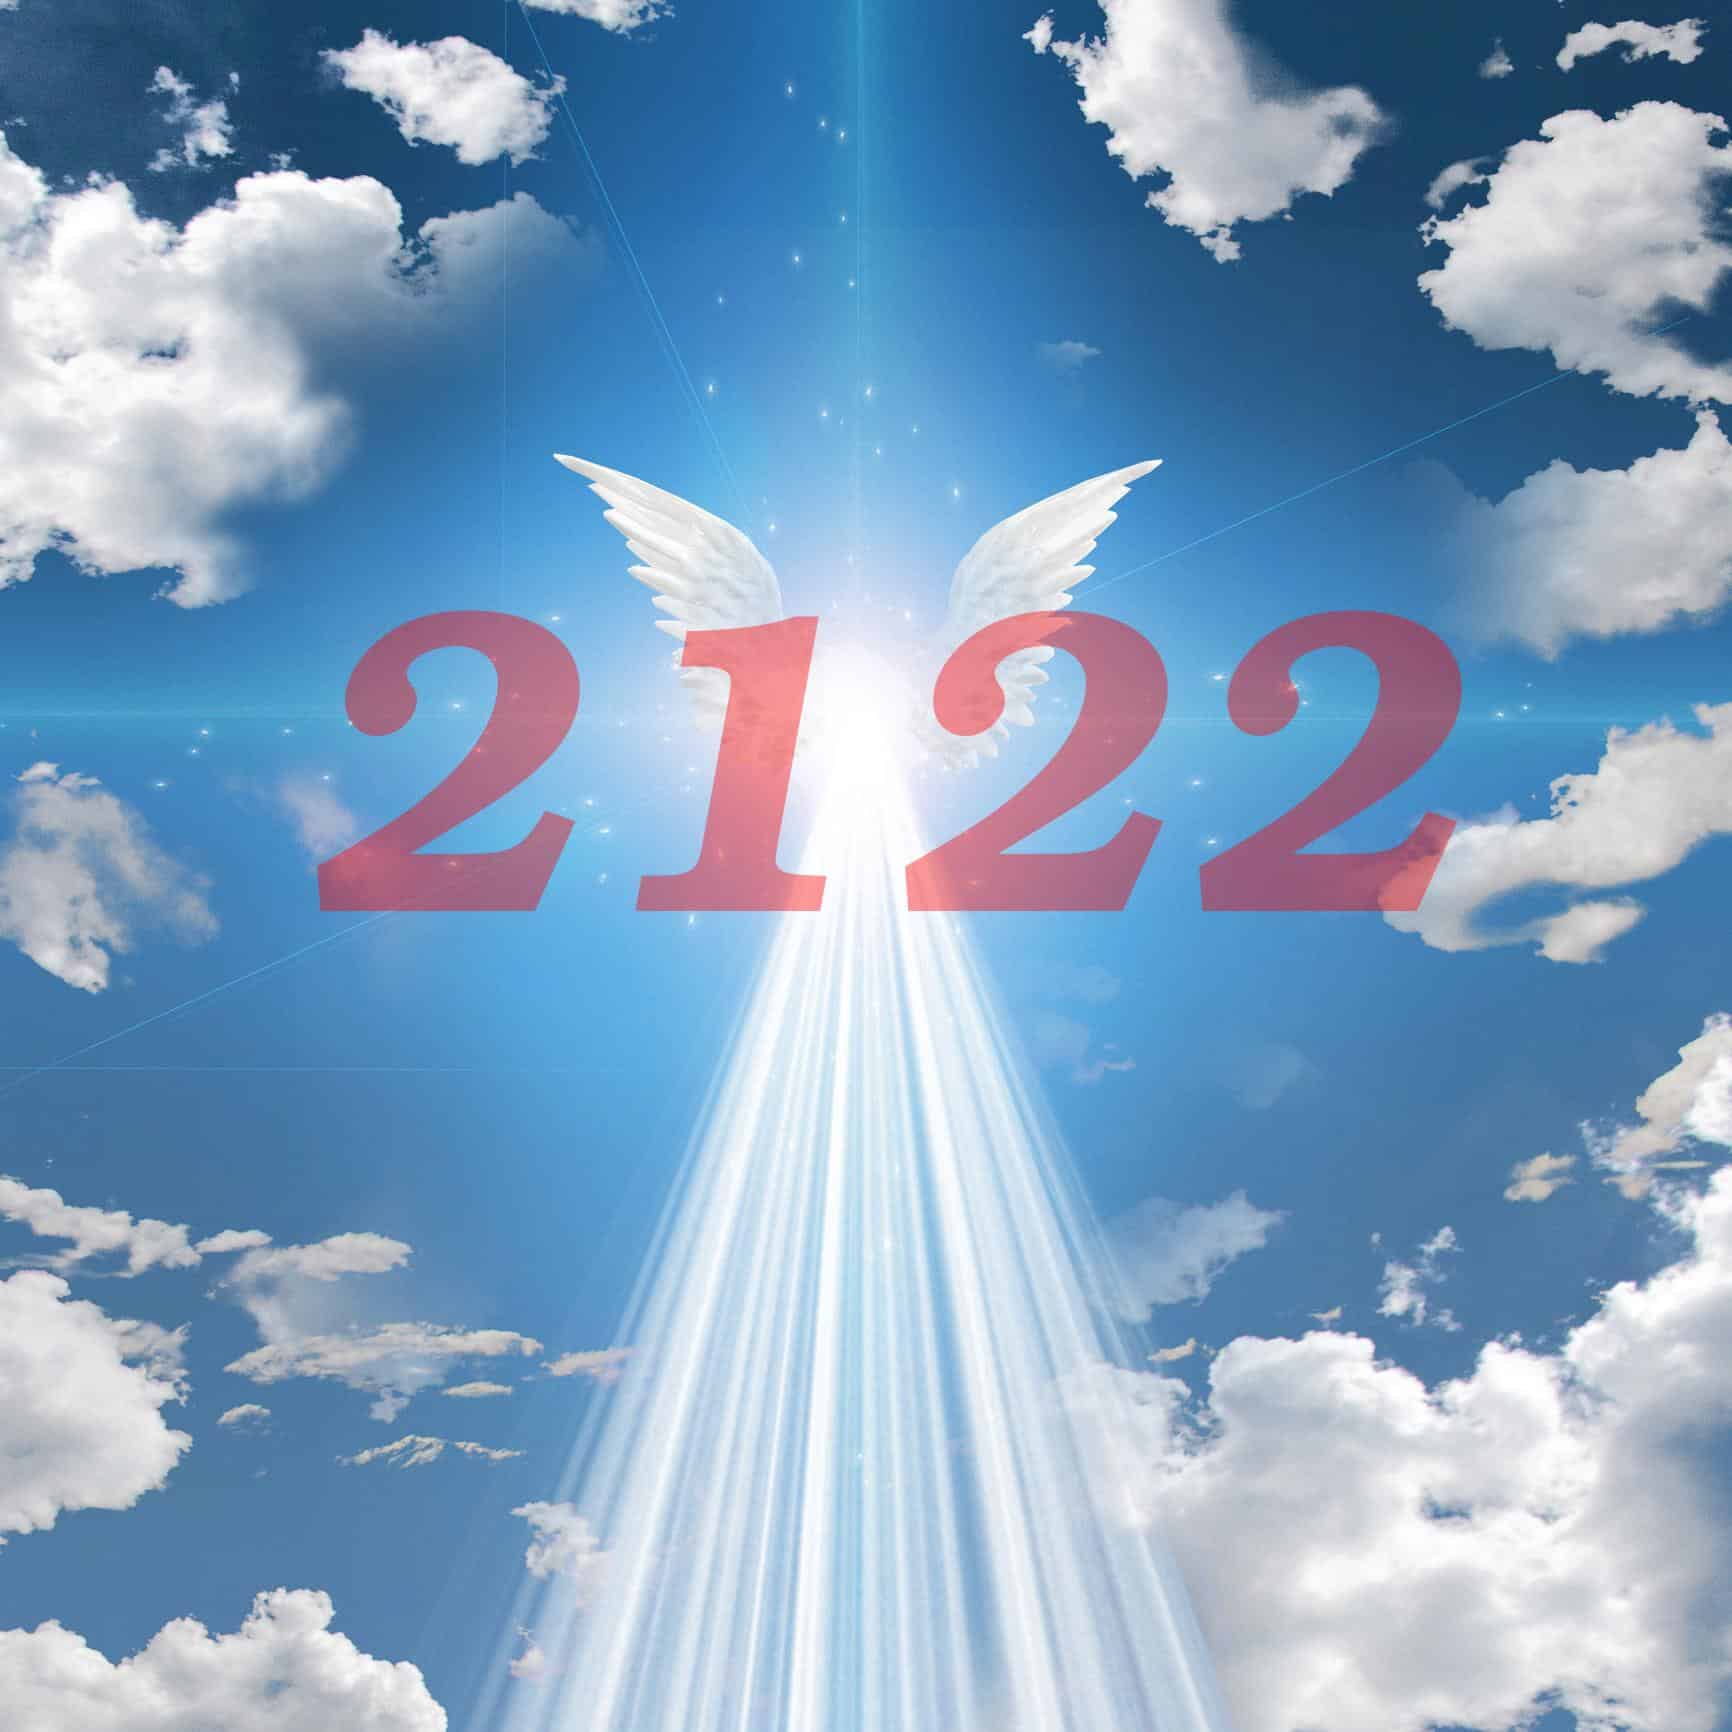  Numéro d'ange 2122 Signification : Ne jamais abandonner